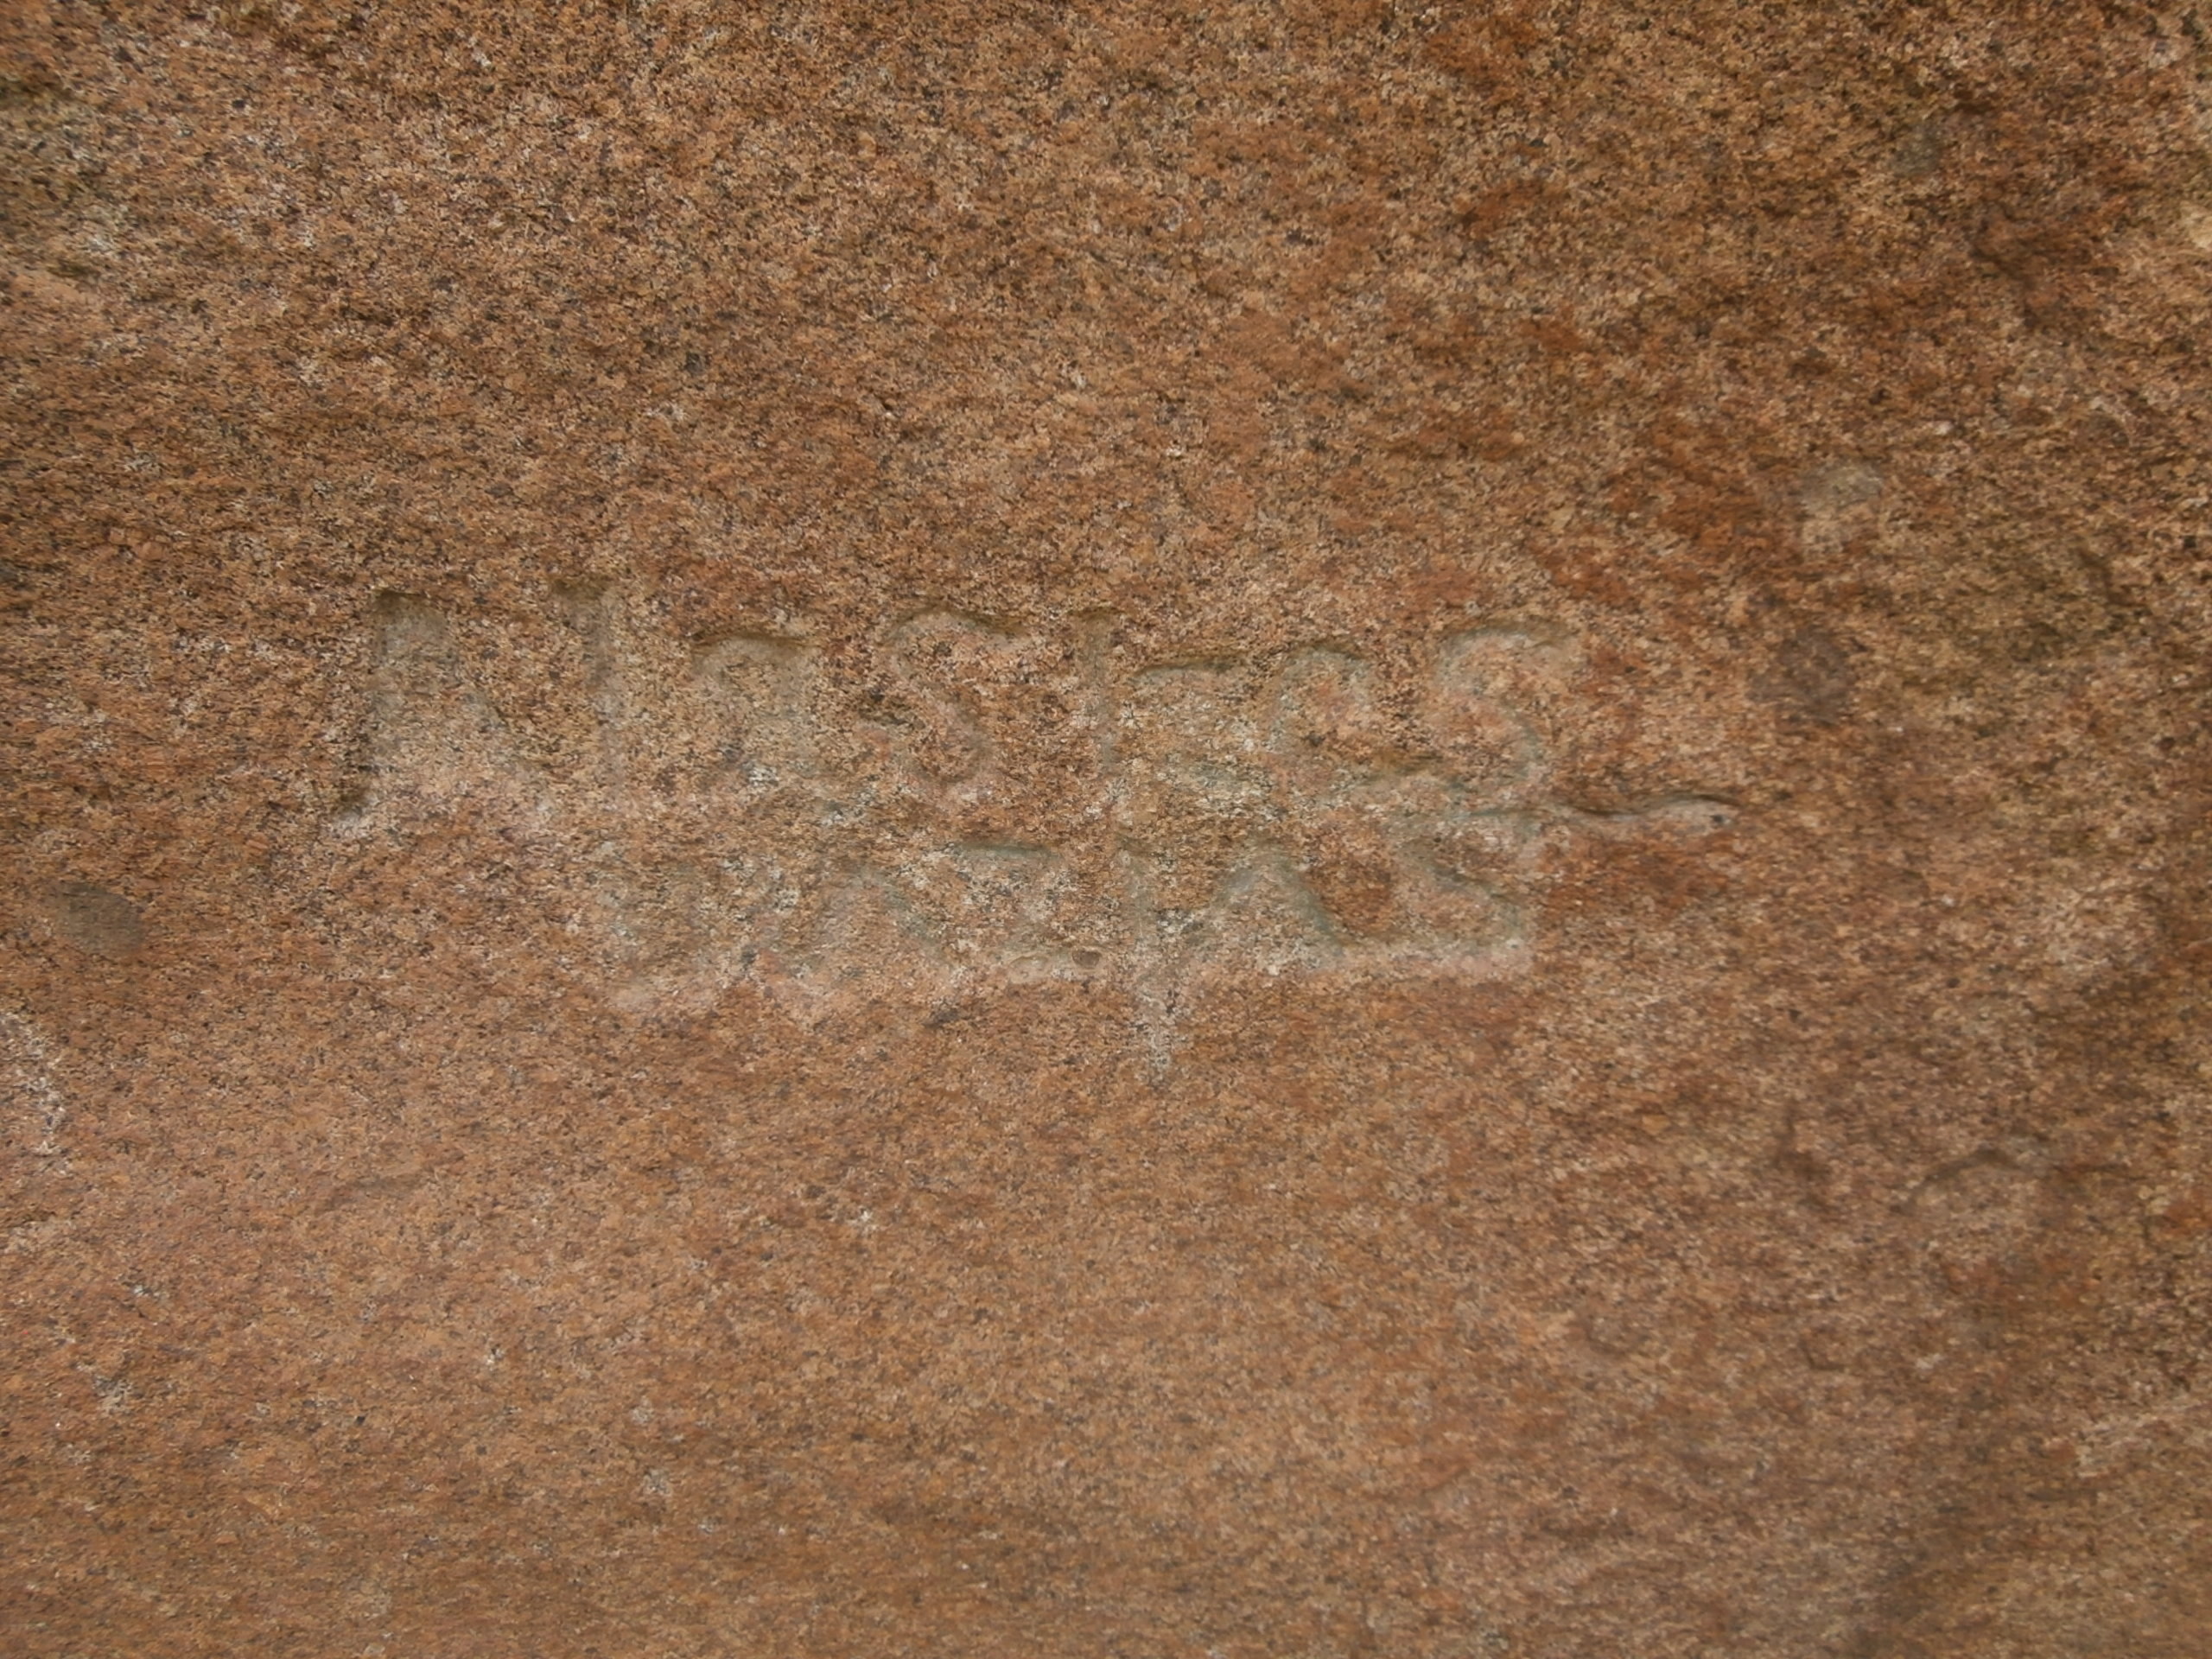 piedra escrita cenicientos